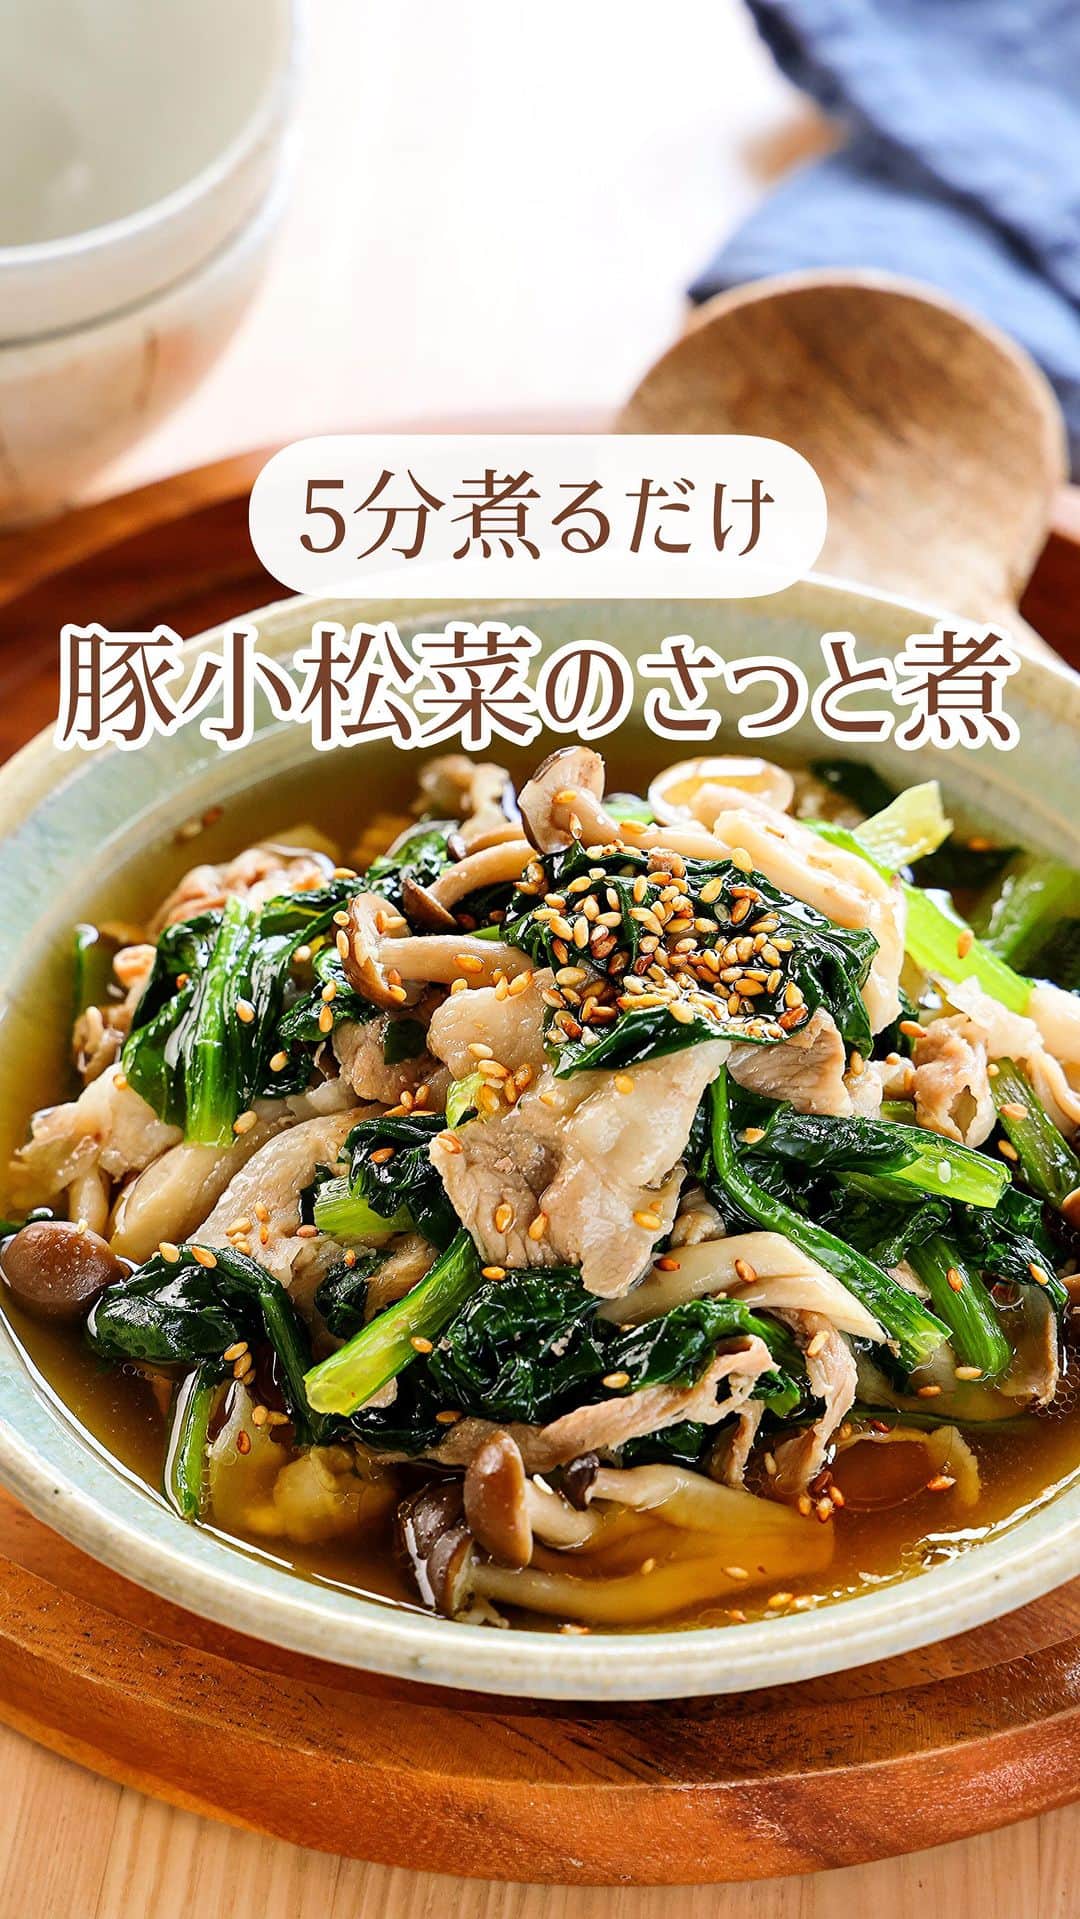 Mizuki【料理ブロガー・簡単レシピ】のインスタグラム：「・煮込み5分ですぐでき💕 ⁡ ［#レシピ ］ ーーーーーーーーーーーー 5分煮るだけ！ 豚肉と小松菜のさっと煮 ーーーーーーーーーーーー ⁡ ⁡ ⁡ おはようございます☺️ ⁡ 今日ご紹介させていただくのは お鍋1つですぐできる❣️ \ 豚肉と小松菜のさっと煮 / ⁡ 煮込み5分のスピードレシピ💕 あっさりコクのあるスープで 野菜がたっぷり食べられますよ〜😋 ⁡ 主菜にも副菜にも使えるので よかったらお試しくださいね✨ ⁡ ⁡ ⁡ ⋱⋰ ⋱⋰ ⋱⋰ ⋱⋰ ⋱⋰ ⋱⋰ ⋱⋰ 📍簡単・時短・節約レシピ更新中  Threadsもこちらから▼ @mizuki_31cafe ⁡ 📍謎の暮らし＆変なライブ垢 @mizuki_kurashi ⋱⋰ ⋱⋰ ⋱⋰ ⋱⋰ ⋱⋰ ⋱⋰ ⋱⋰ ⁡ ⁡ ⁡ ＿＿＿＿＿＿＿＿＿＿＿＿＿＿＿＿＿＿＿ 【2人分】 豚しゃぶしゃぶ用肉...150g 小松菜...1袋(200g) しめじ...1袋 ⚫︎水...250ml ⚫︎みりん...大1 ⚫︎醤油・鶏がらスープ...各小2 ⚫︎ごま油...大1/2 ごま...適量 ⁡ 1.小松菜は4cm長さに切る。しめじはほぐす。 2.鍋に⚫︎を入れて中火にかけ、煮立ったら豚肉を加えてほぐす。色が変わったら1も加え、たまに混ぜながら5分煮る。 3.器に盛り、ごまを振る。 ￣￣￣￣￣￣￣￣￣￣￣￣￣￣￣￣￣￣￣ ⁡ ⁡ 《ポイント》 ♦︎豚バラ薄切り肉を6〜7cm長さに切って使用しても◎ ♦︎仕上げに一味(又は七味)唐辛子を振ってもおいしいです♩ ⁡ ⁡ ⁡ ⁡ ⁡ ⋱⋰ ⋱⋰ ⋱⋰ ⋱⋰ ⋱⋰ ⋱⋰ ⋱⋰  愛用している調理器具・器など   #楽天ROOMに載せてます ‎𐩢𐩺  (ハイライトから飛べます🕊️) ⋱⋰ ⋱⋰ ⋱⋰ ⋱⋰ ⋱⋰ ⋱⋰ ⋱⋰ ⁡ ⁡ ⁡ ⁡ ⁡ ✼••┈┈┈┈┈••✼••┈┈┈┈┈••✼ 今日のごはんこれに決まり！ ‎𓊆#Mizukiのレシピノート 500品𓊇 ✼••┈┈┈┈┈••✼••┈┈┈┈┈••✼ ⁡ ˗ˏˋ おかげさまで25万部突破 ˎˊ˗ 料理レシピ本大賞準大賞を受賞しました✨ ⁡ 6000点の中からレシピを厳選し まさかの【500レシピ掲載】 肉や魚のメインおかずはもちろん 副菜、丼、麺、スープ、お菓子 ハレの日のレシピ、鍋のレシピまで 全てこの一冊で完結 𓌉◯𓇋 (全国の書店・ネット書店で発売中) ⁡ ⁡ ⁡ ⁡ ⁡ ⁡ #小松菜 #小松菜レシピ #きのこ #きのこレシピ #豚肉 #豚肉レシピ #煮物 #節約料理  #簡単料理  #時短料理 #mizukiレシピ  #時短レシピ #節約レシピ #簡単レシピ」